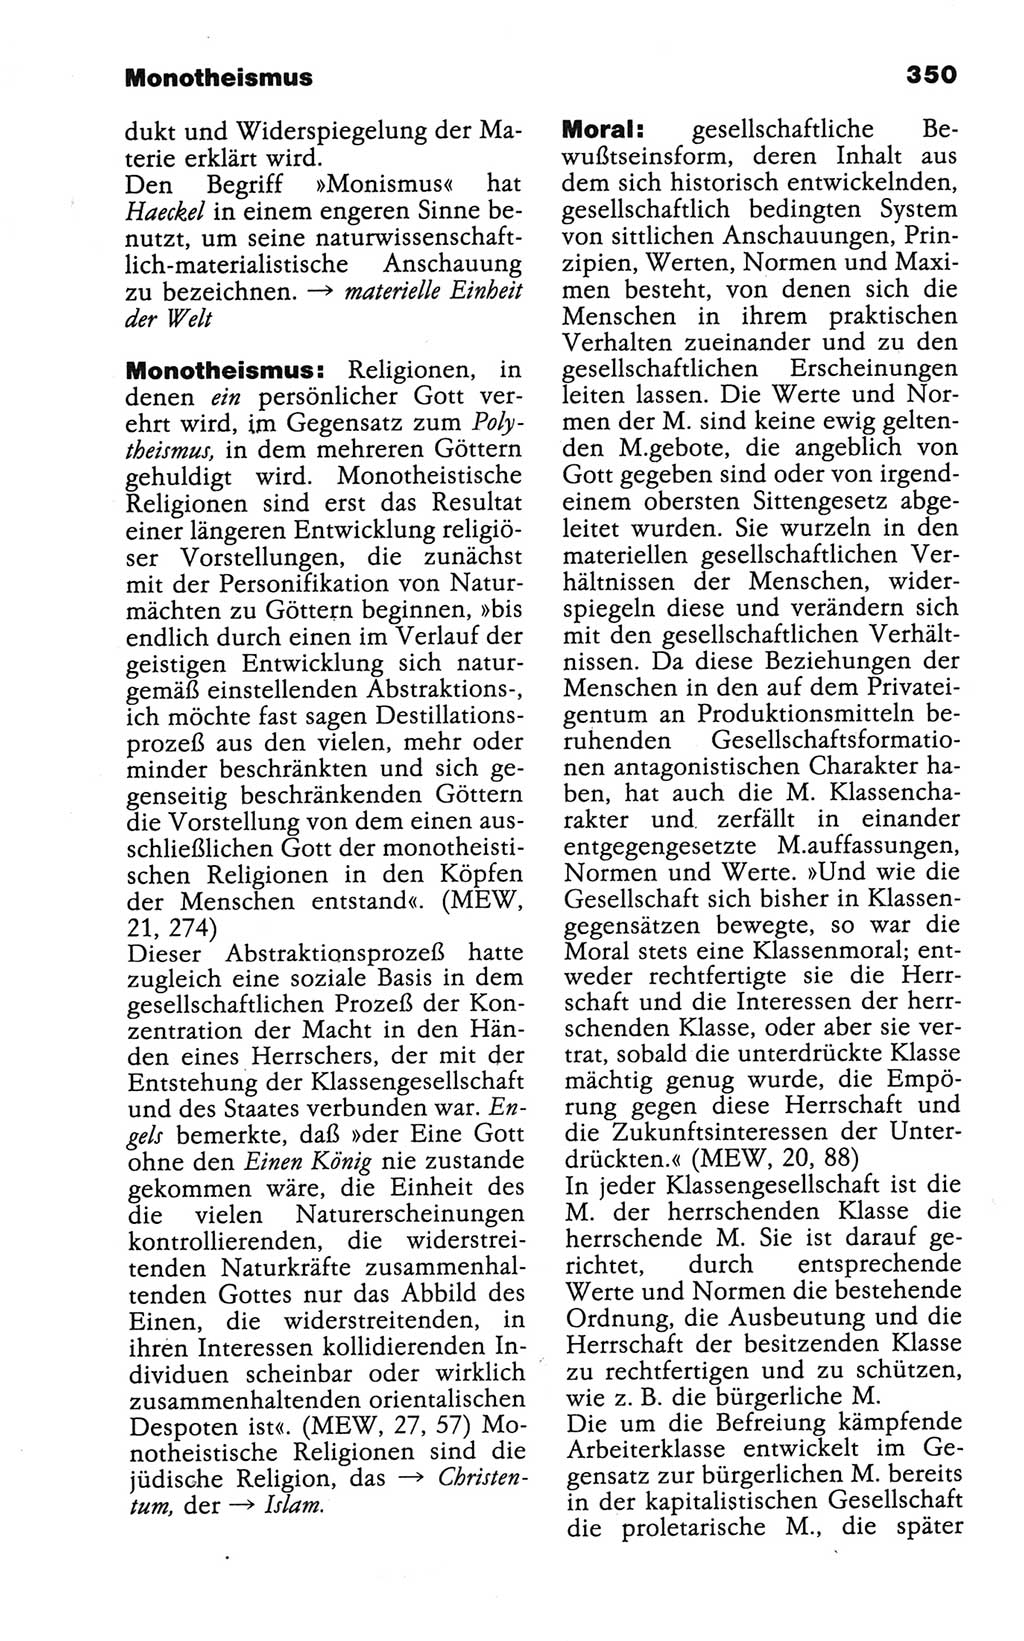 Wörterbuch der marxistisch-leninistischen Philosophie [Deutsche Demokratische Republik (DDR)] 1986, Seite 350 (Wb. ML Phil. DDR 1986, S. 350)